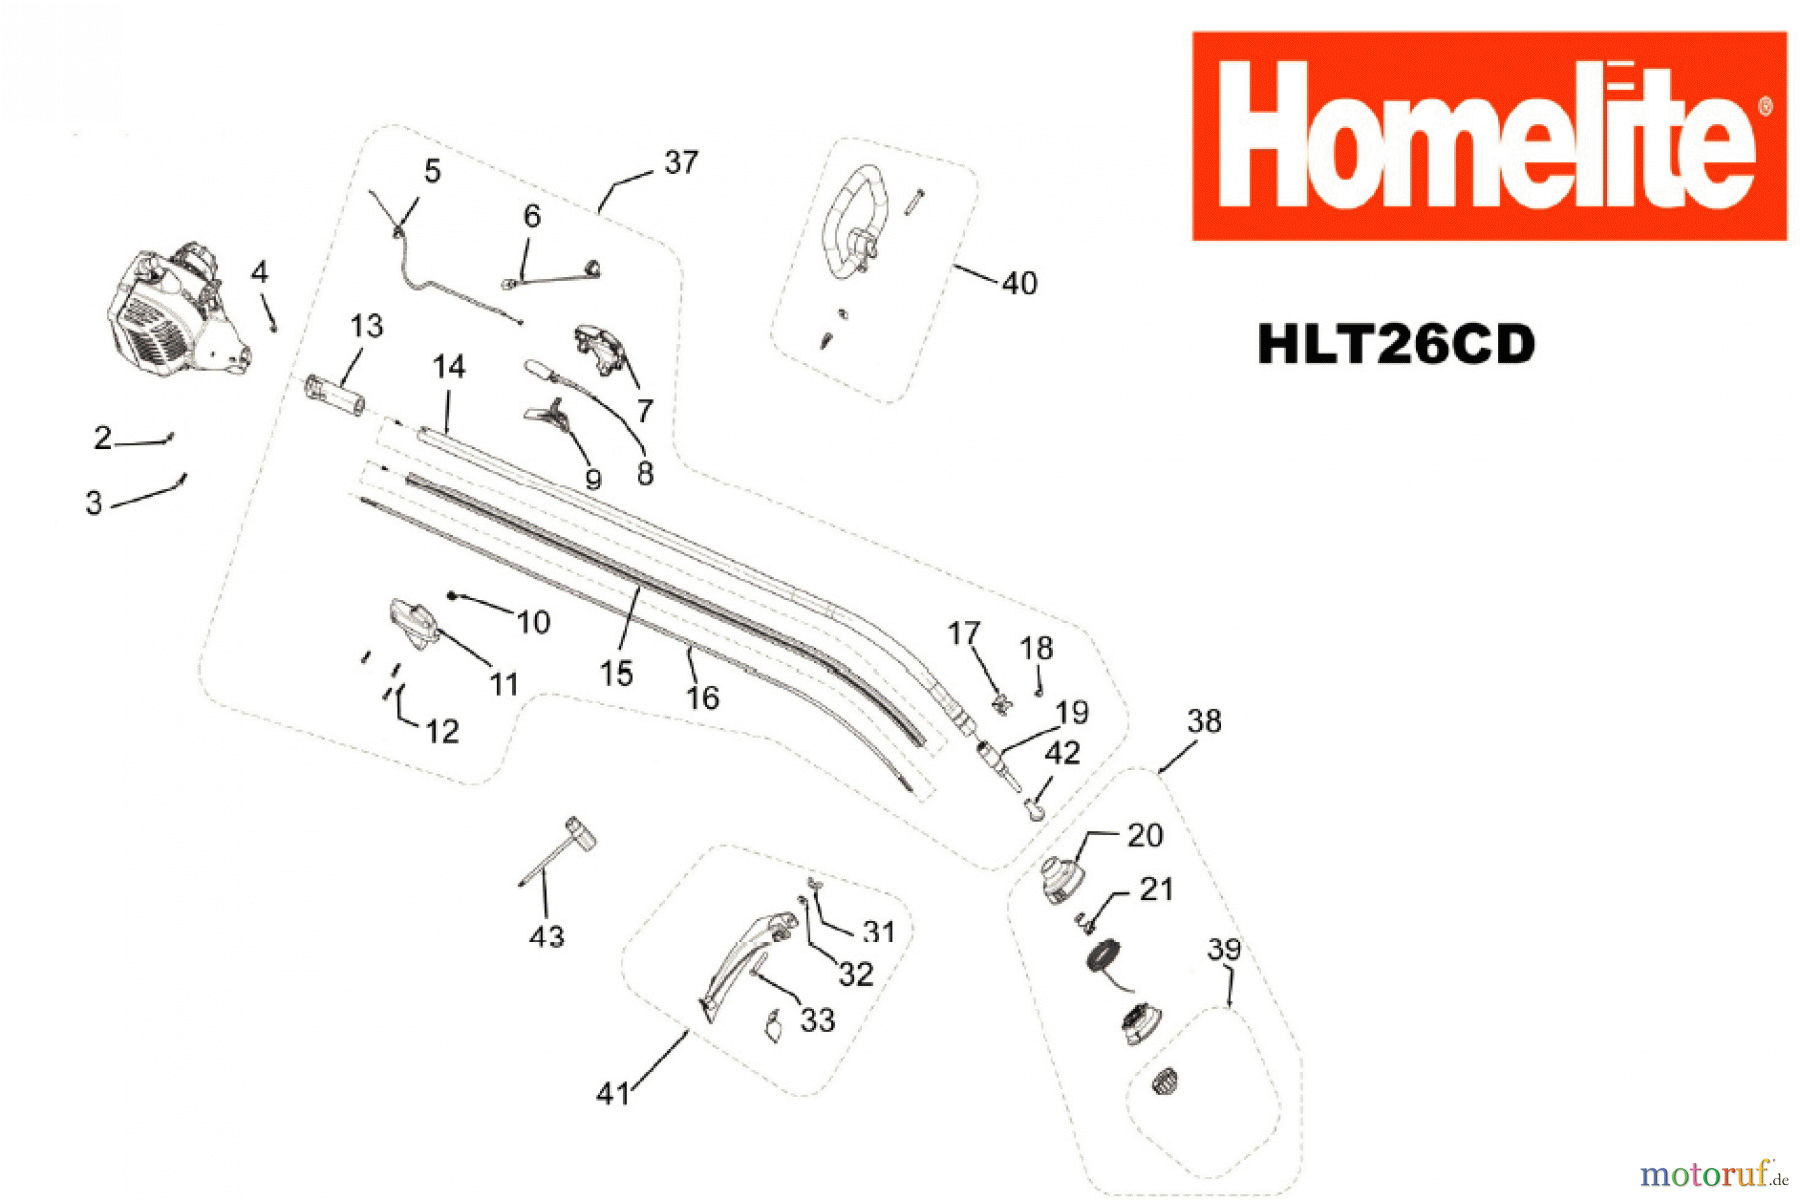  Homelite Trimmer Benzin HLT26CD Seite 1